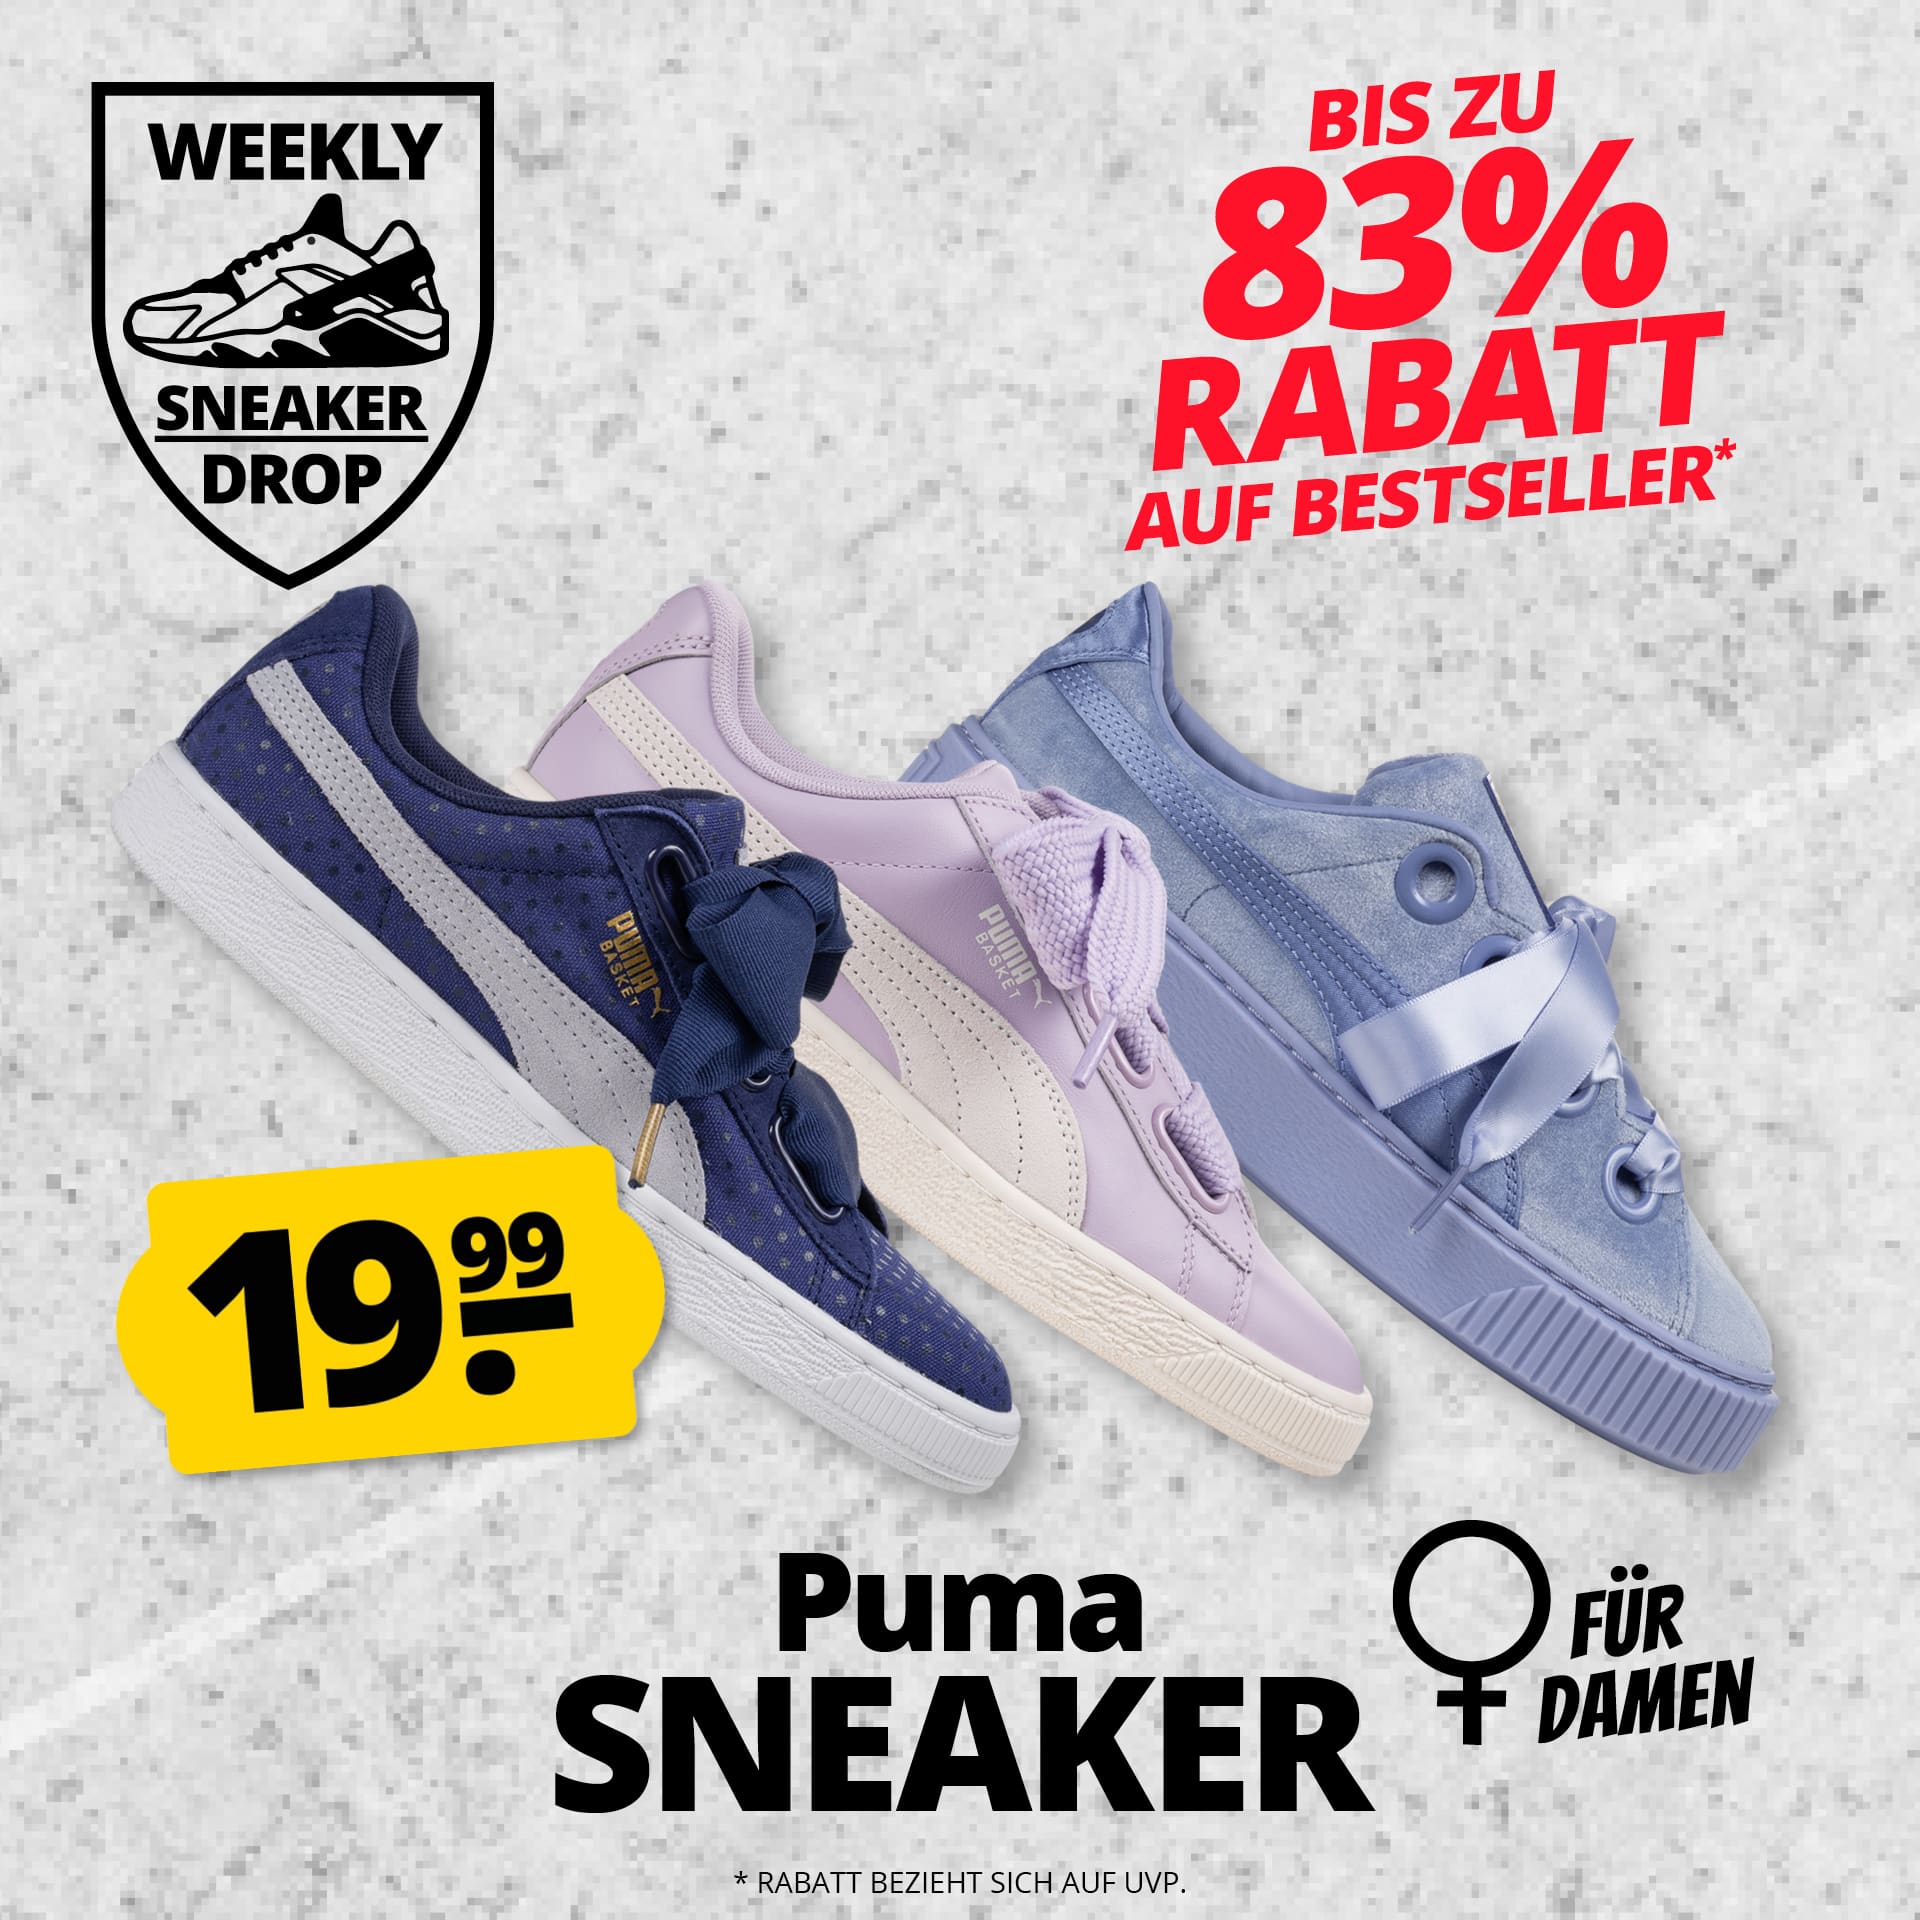 Thumbnail Stylischer Puma Damen Sneaker Drop ✔️ für nur je 19,99€ + 3,95€ Versand ✔️ alle 3 Modelle direkt ohne Versandkosten